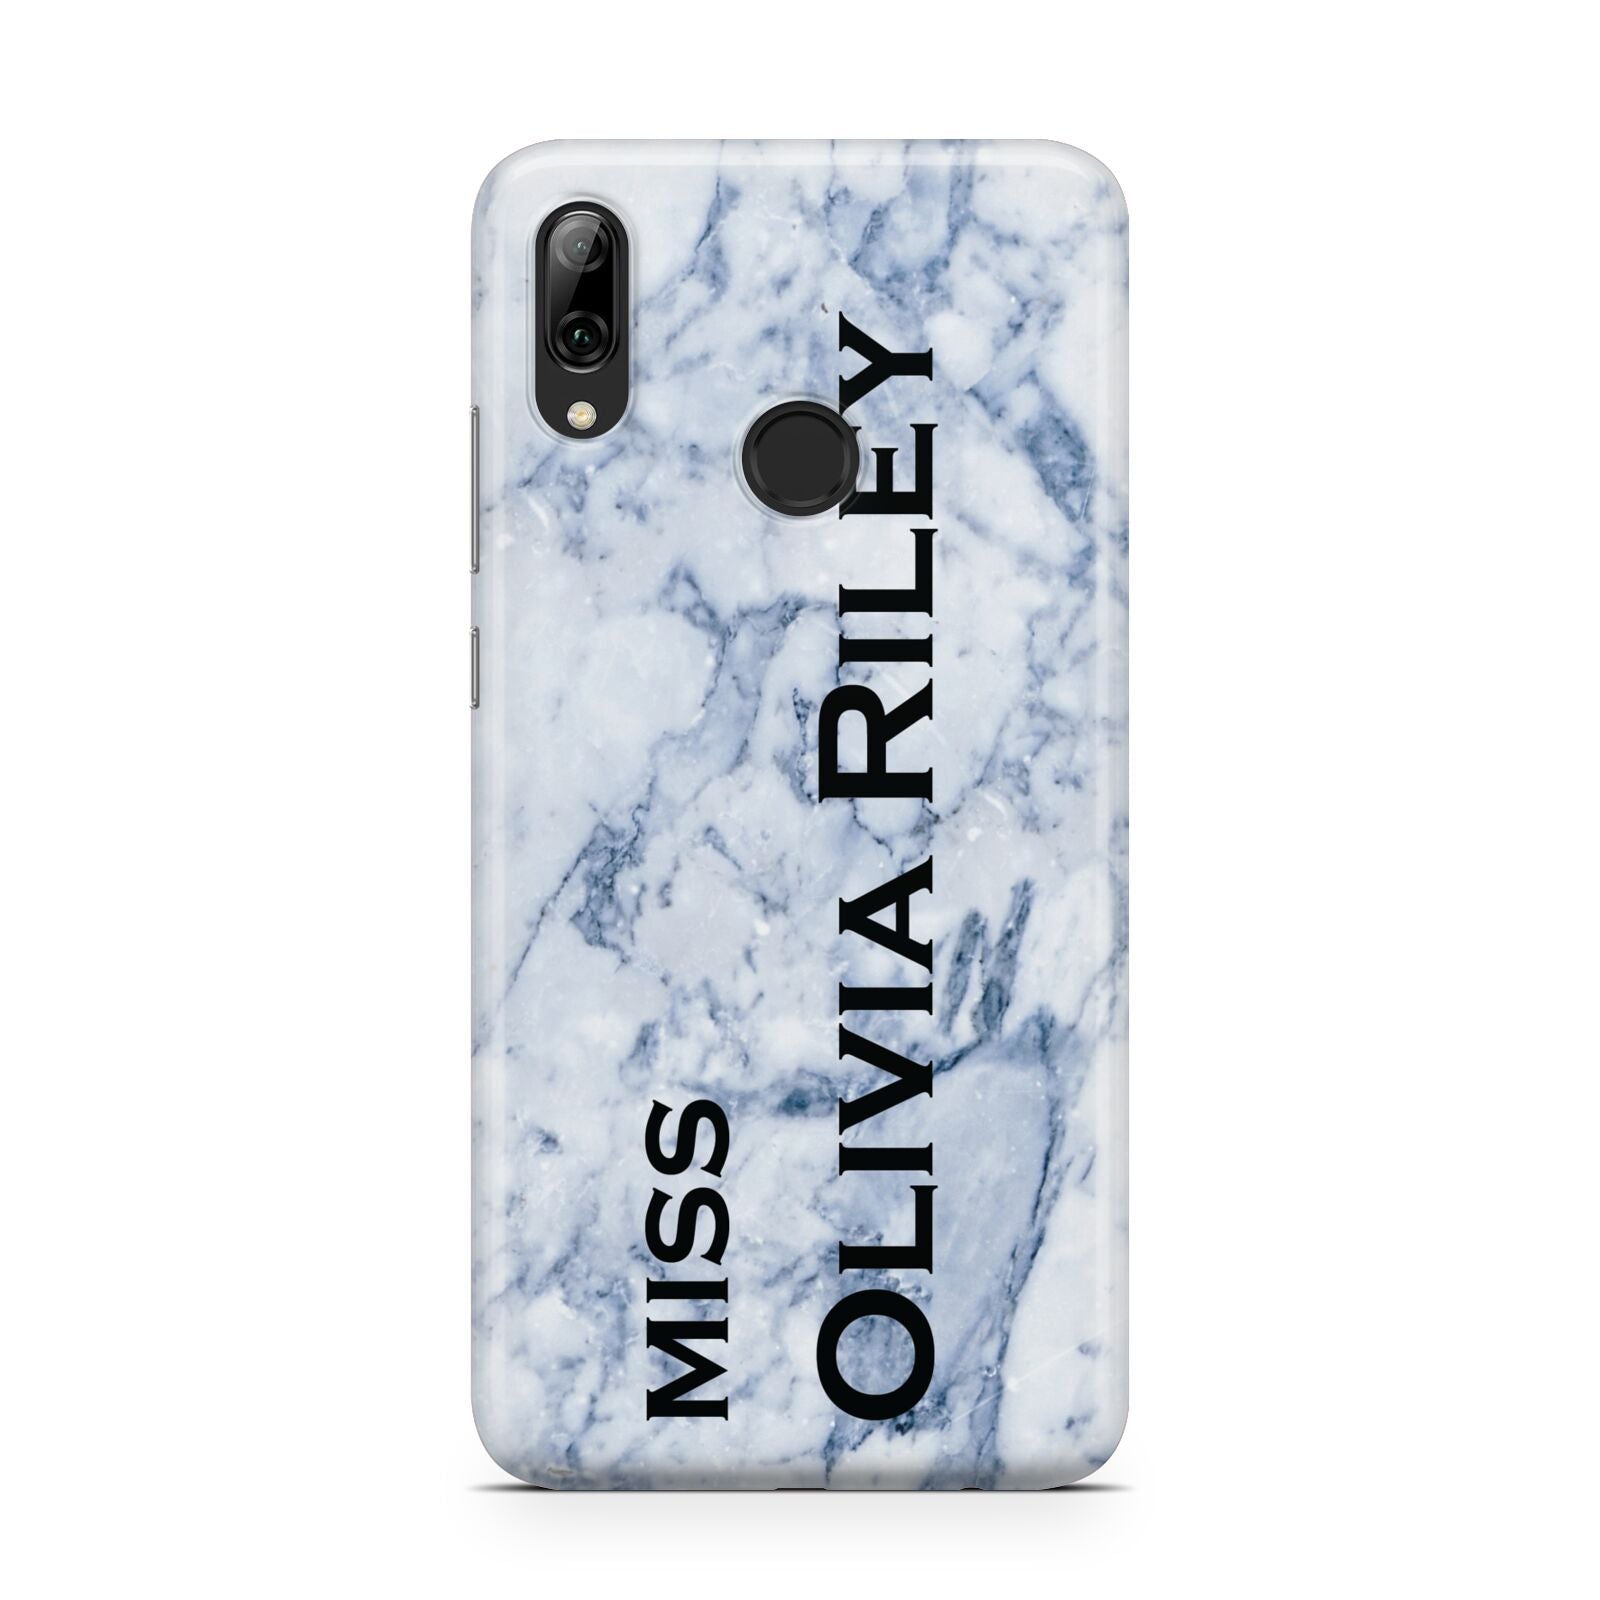 Full Name Grey Marble Huawei Y7 2019